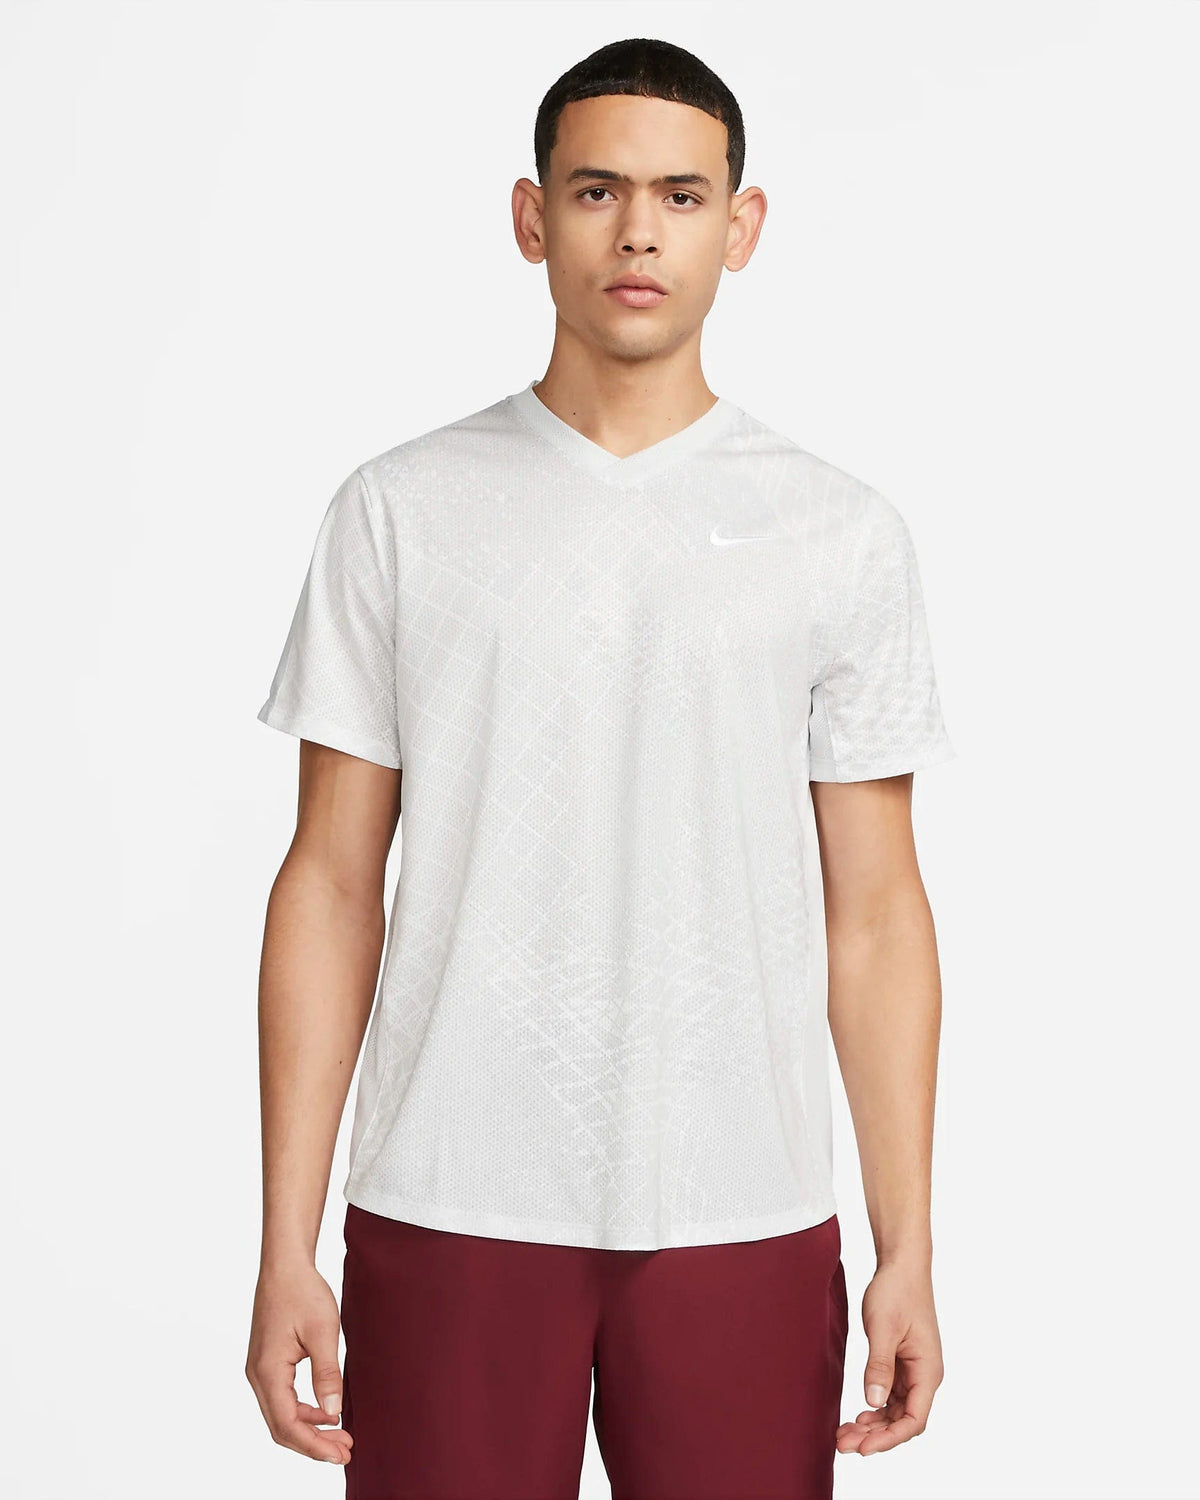 Nike Men's Dri-Fit Training T-Shirt X-Large White 